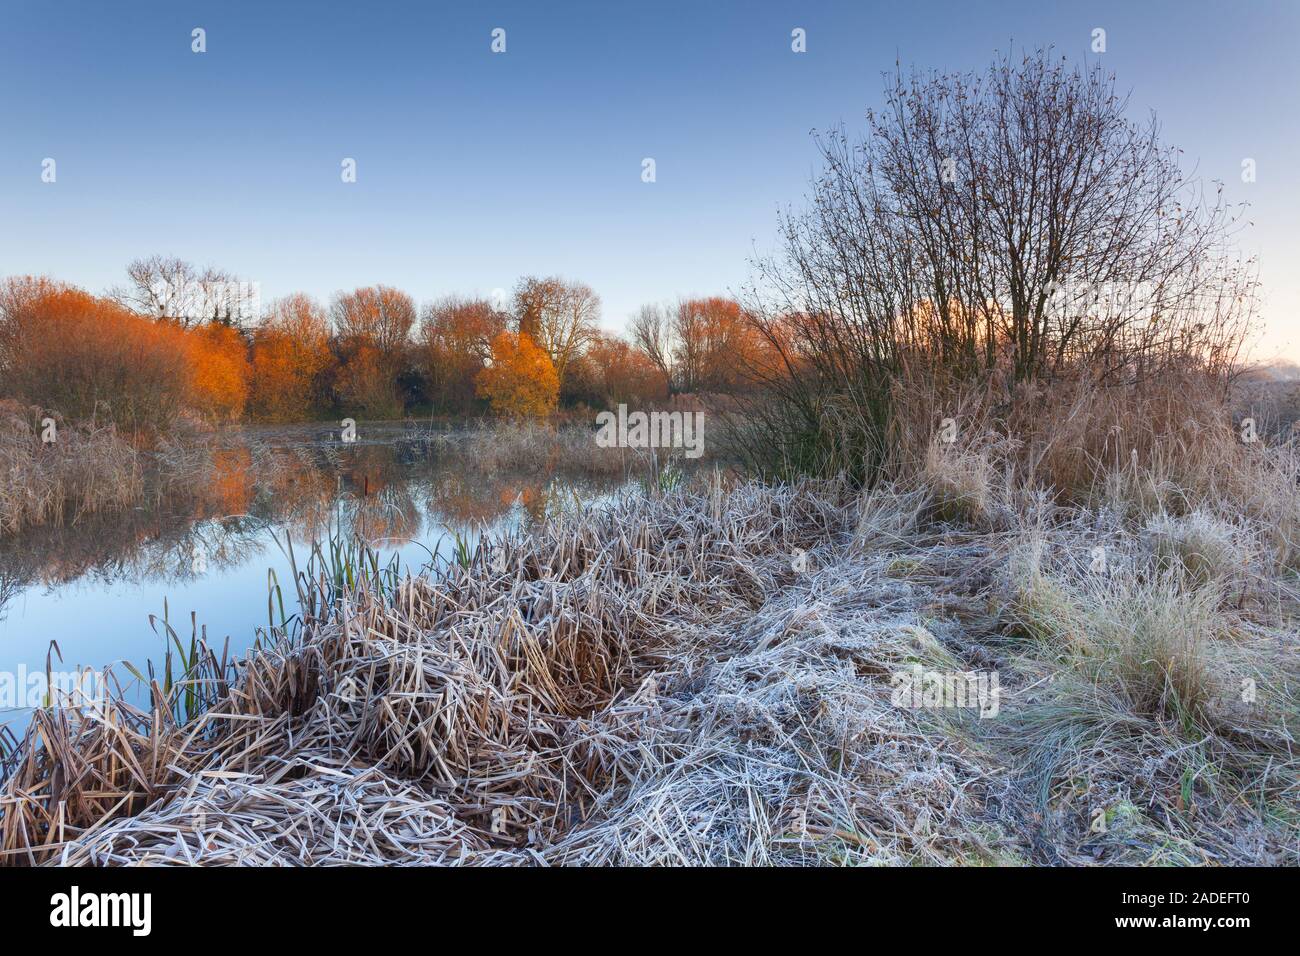 Barton-upon-Humber, Norte de Lincolnshire, Reino Unido. 30 de noviembre de 2019. El clima del Reino Unido: una reserva natural en una helada mañana de invierno en diciembre. Crédito: LEE BEEL/ Foto de stock